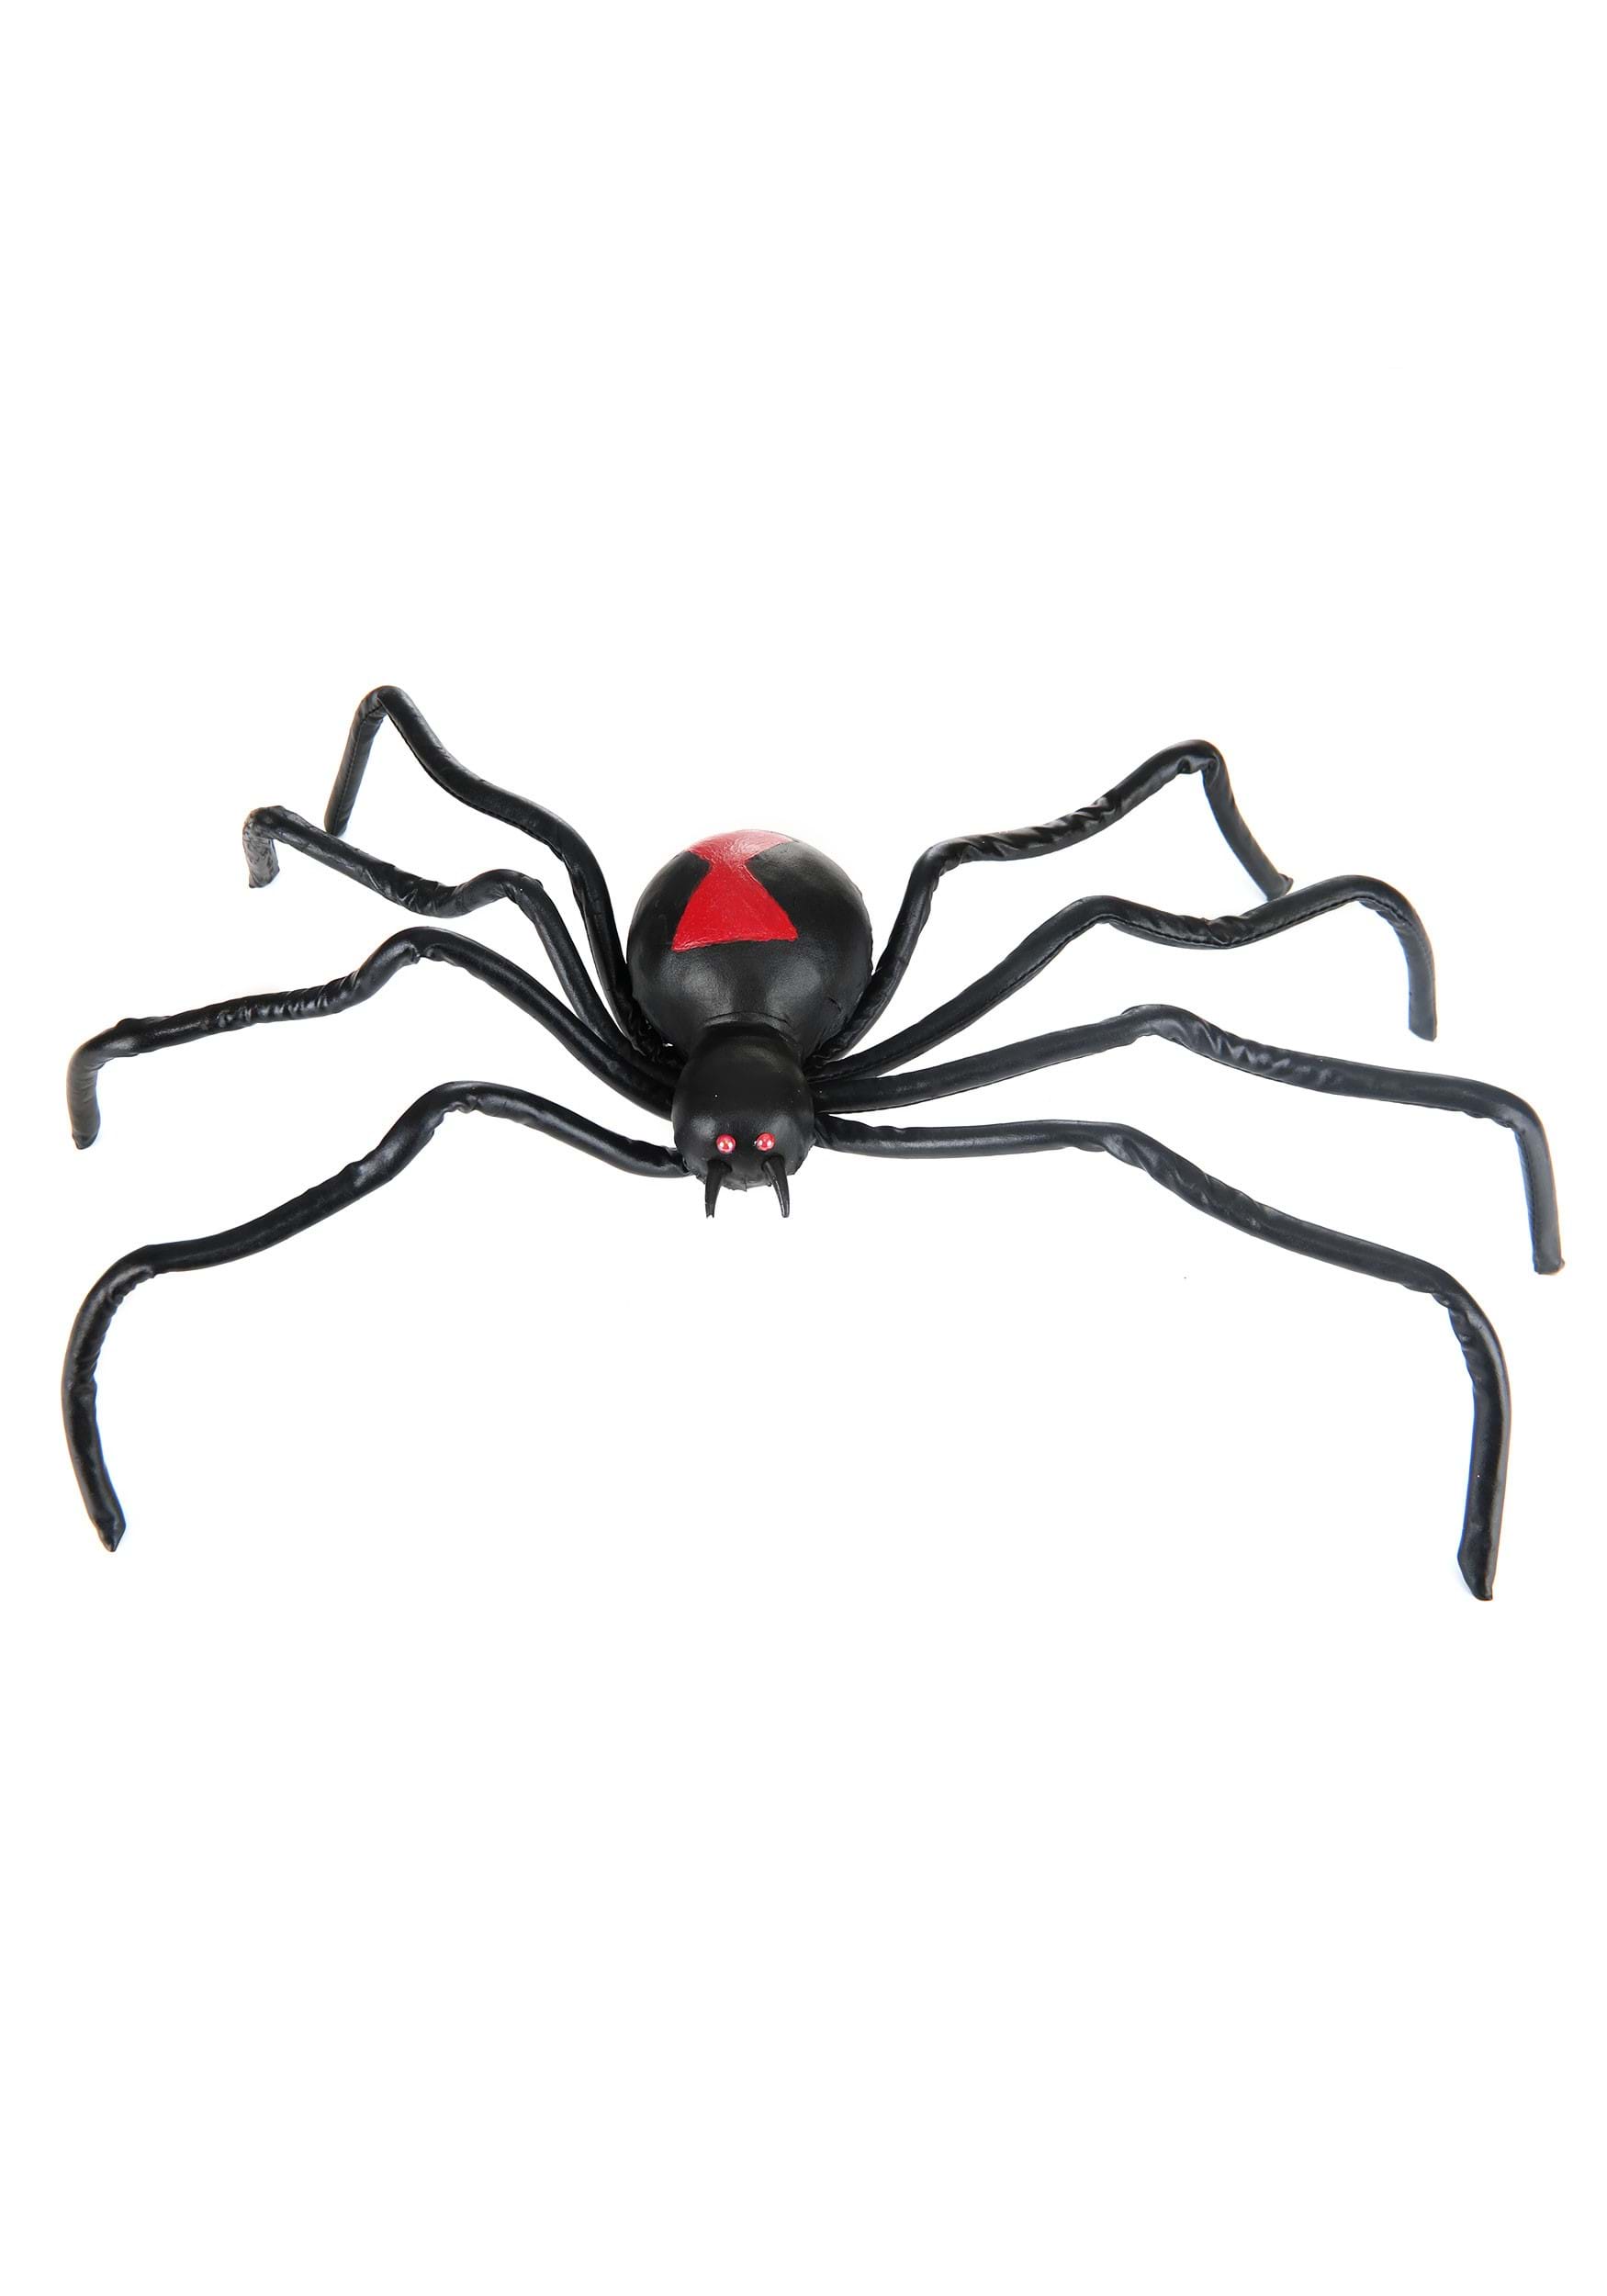 Black Widow Spider Halloween Prop Spider Decorations